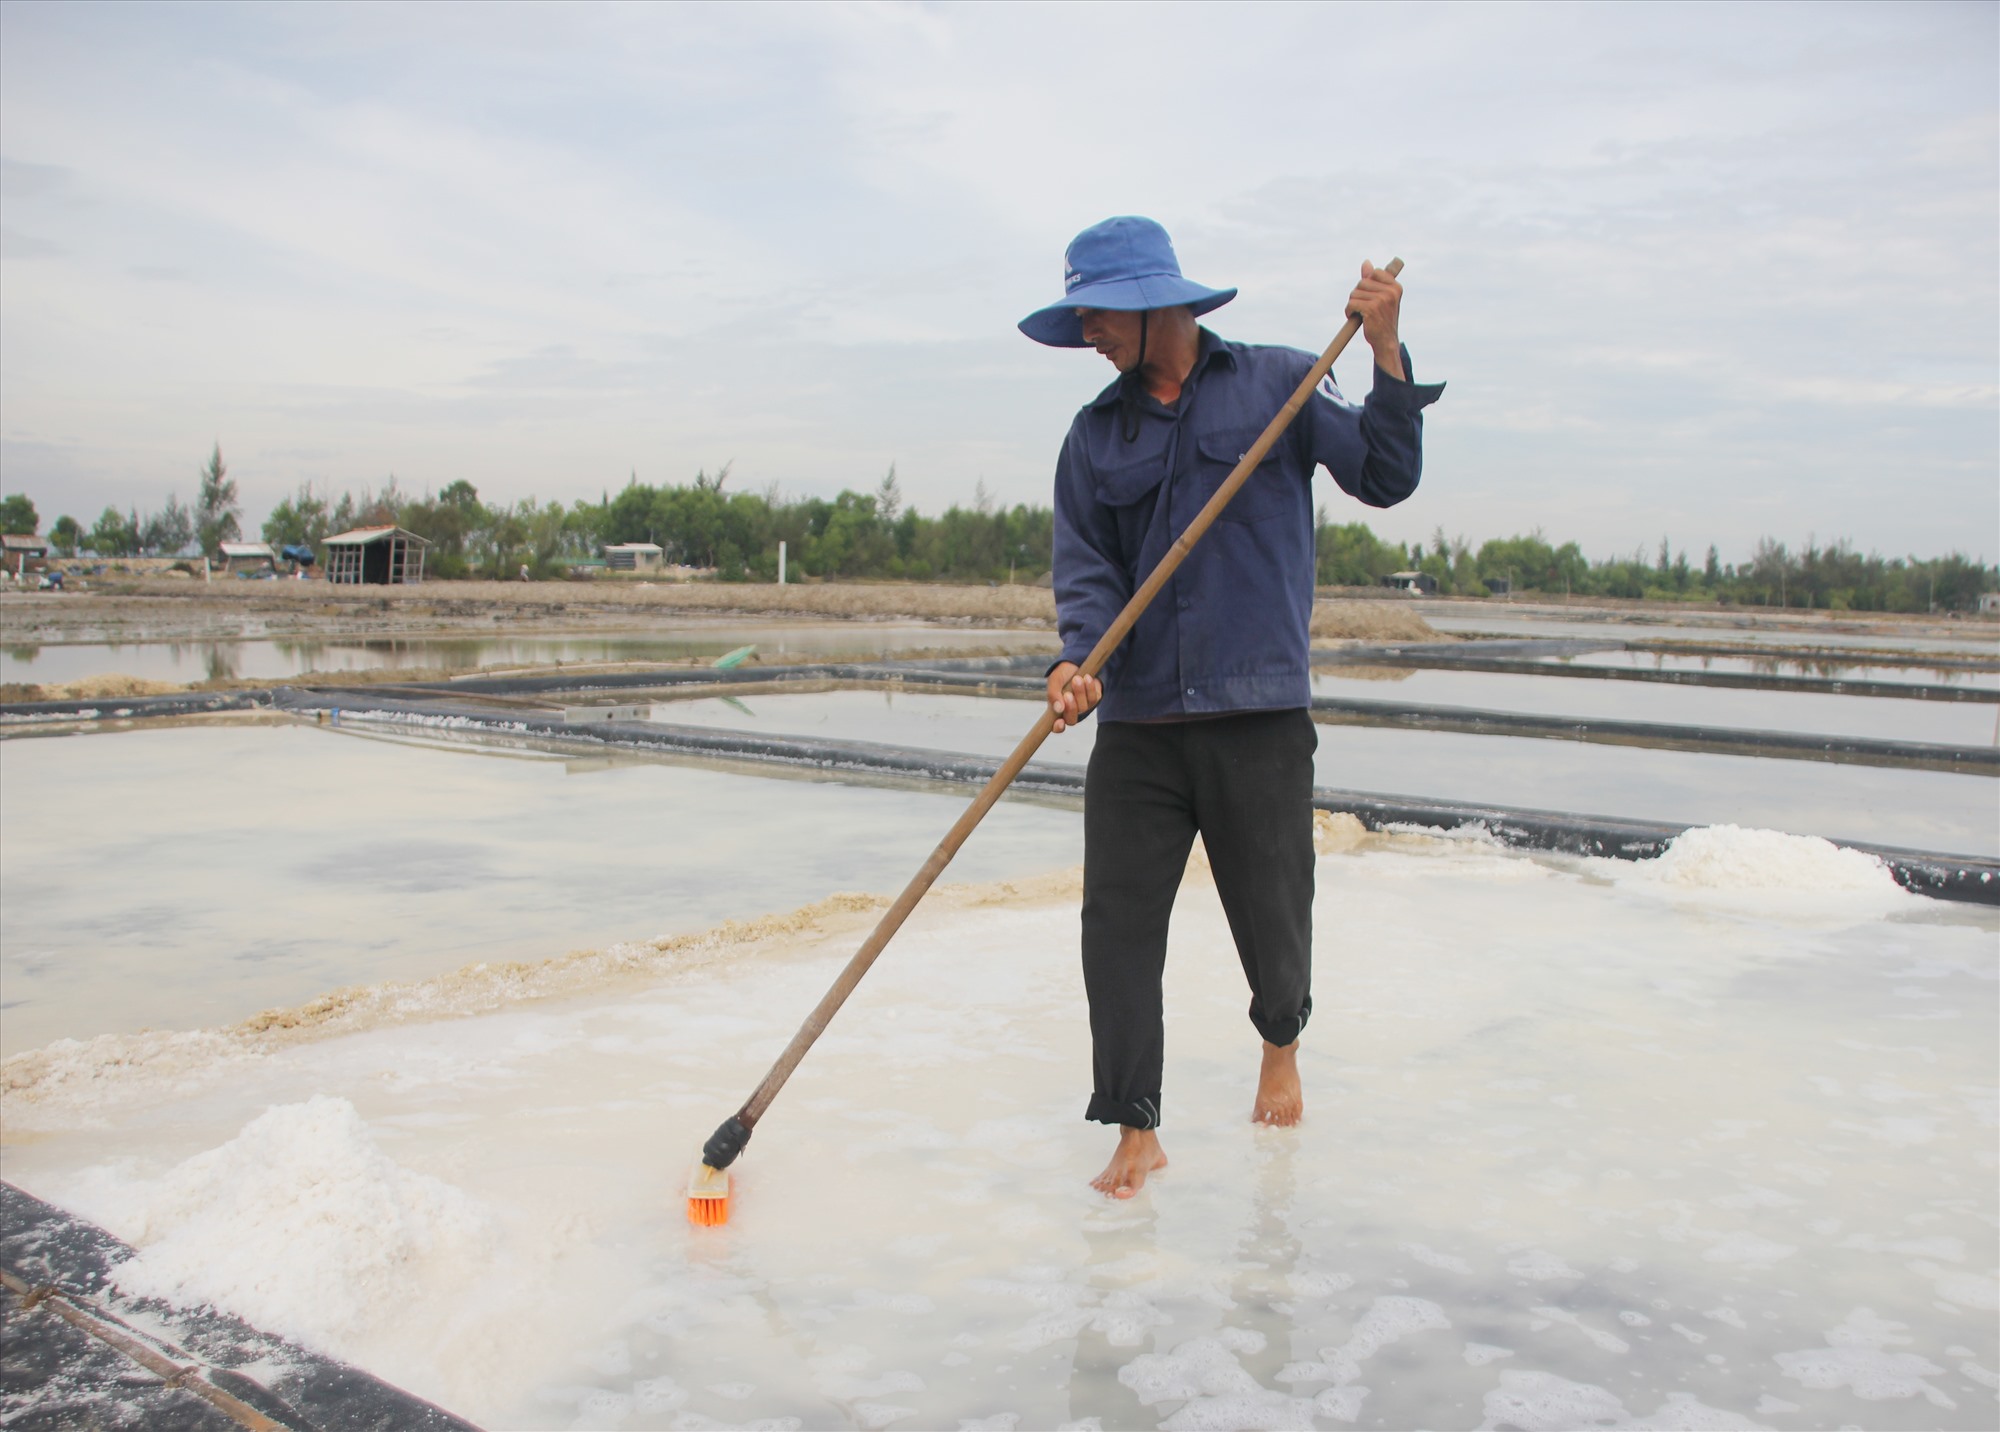 Quảng Nam được biết đến là vùng đất trăm nghề, là nơi phát triển giao thương mạnh mẽ trong quá khứ. Nhiều làng nghề truyền thống đang được bảo tồn và phát huy. 